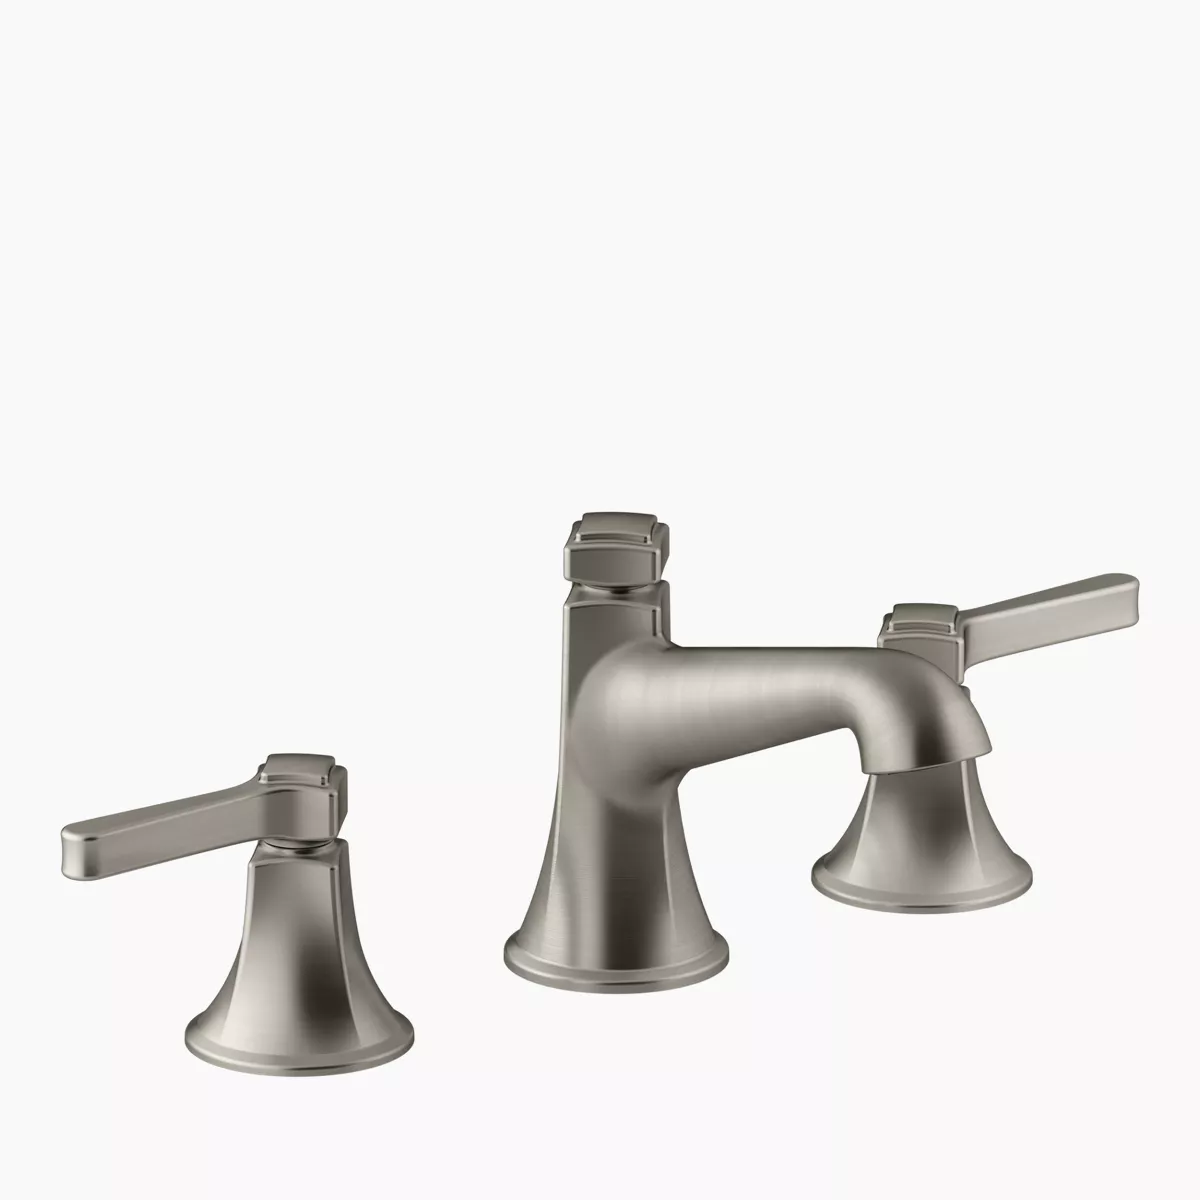 Tempered Semi-Professional Kitchen Sink Faucet | K-24662 | KOHLER